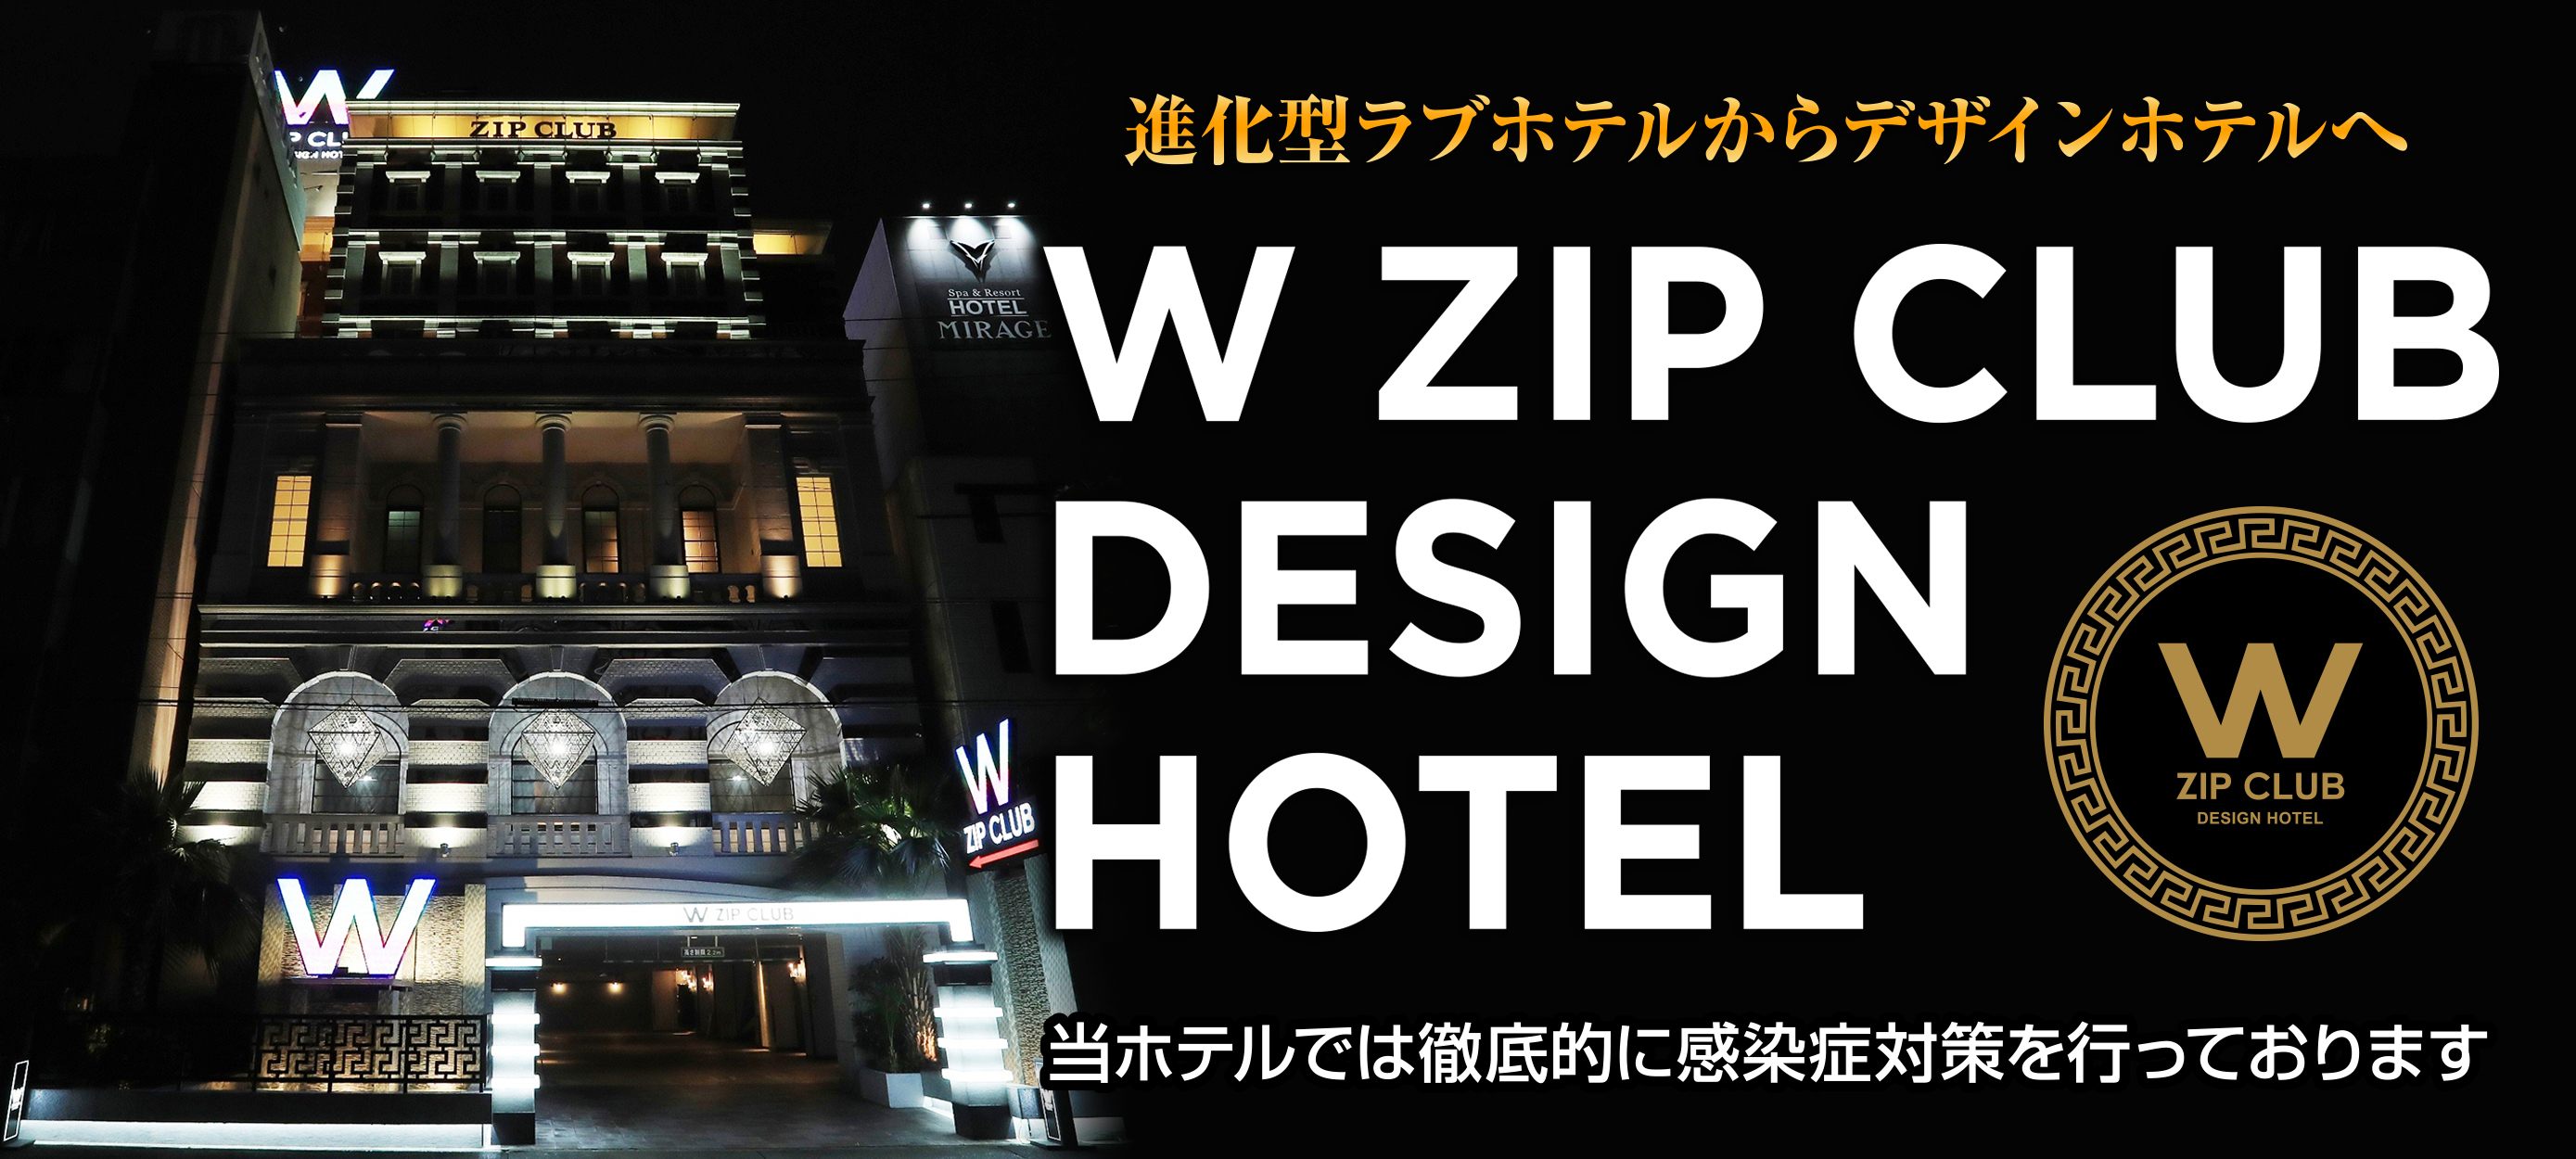 W Zip Club Design Hotel 名古屋市 中区 オフィシャルサイト